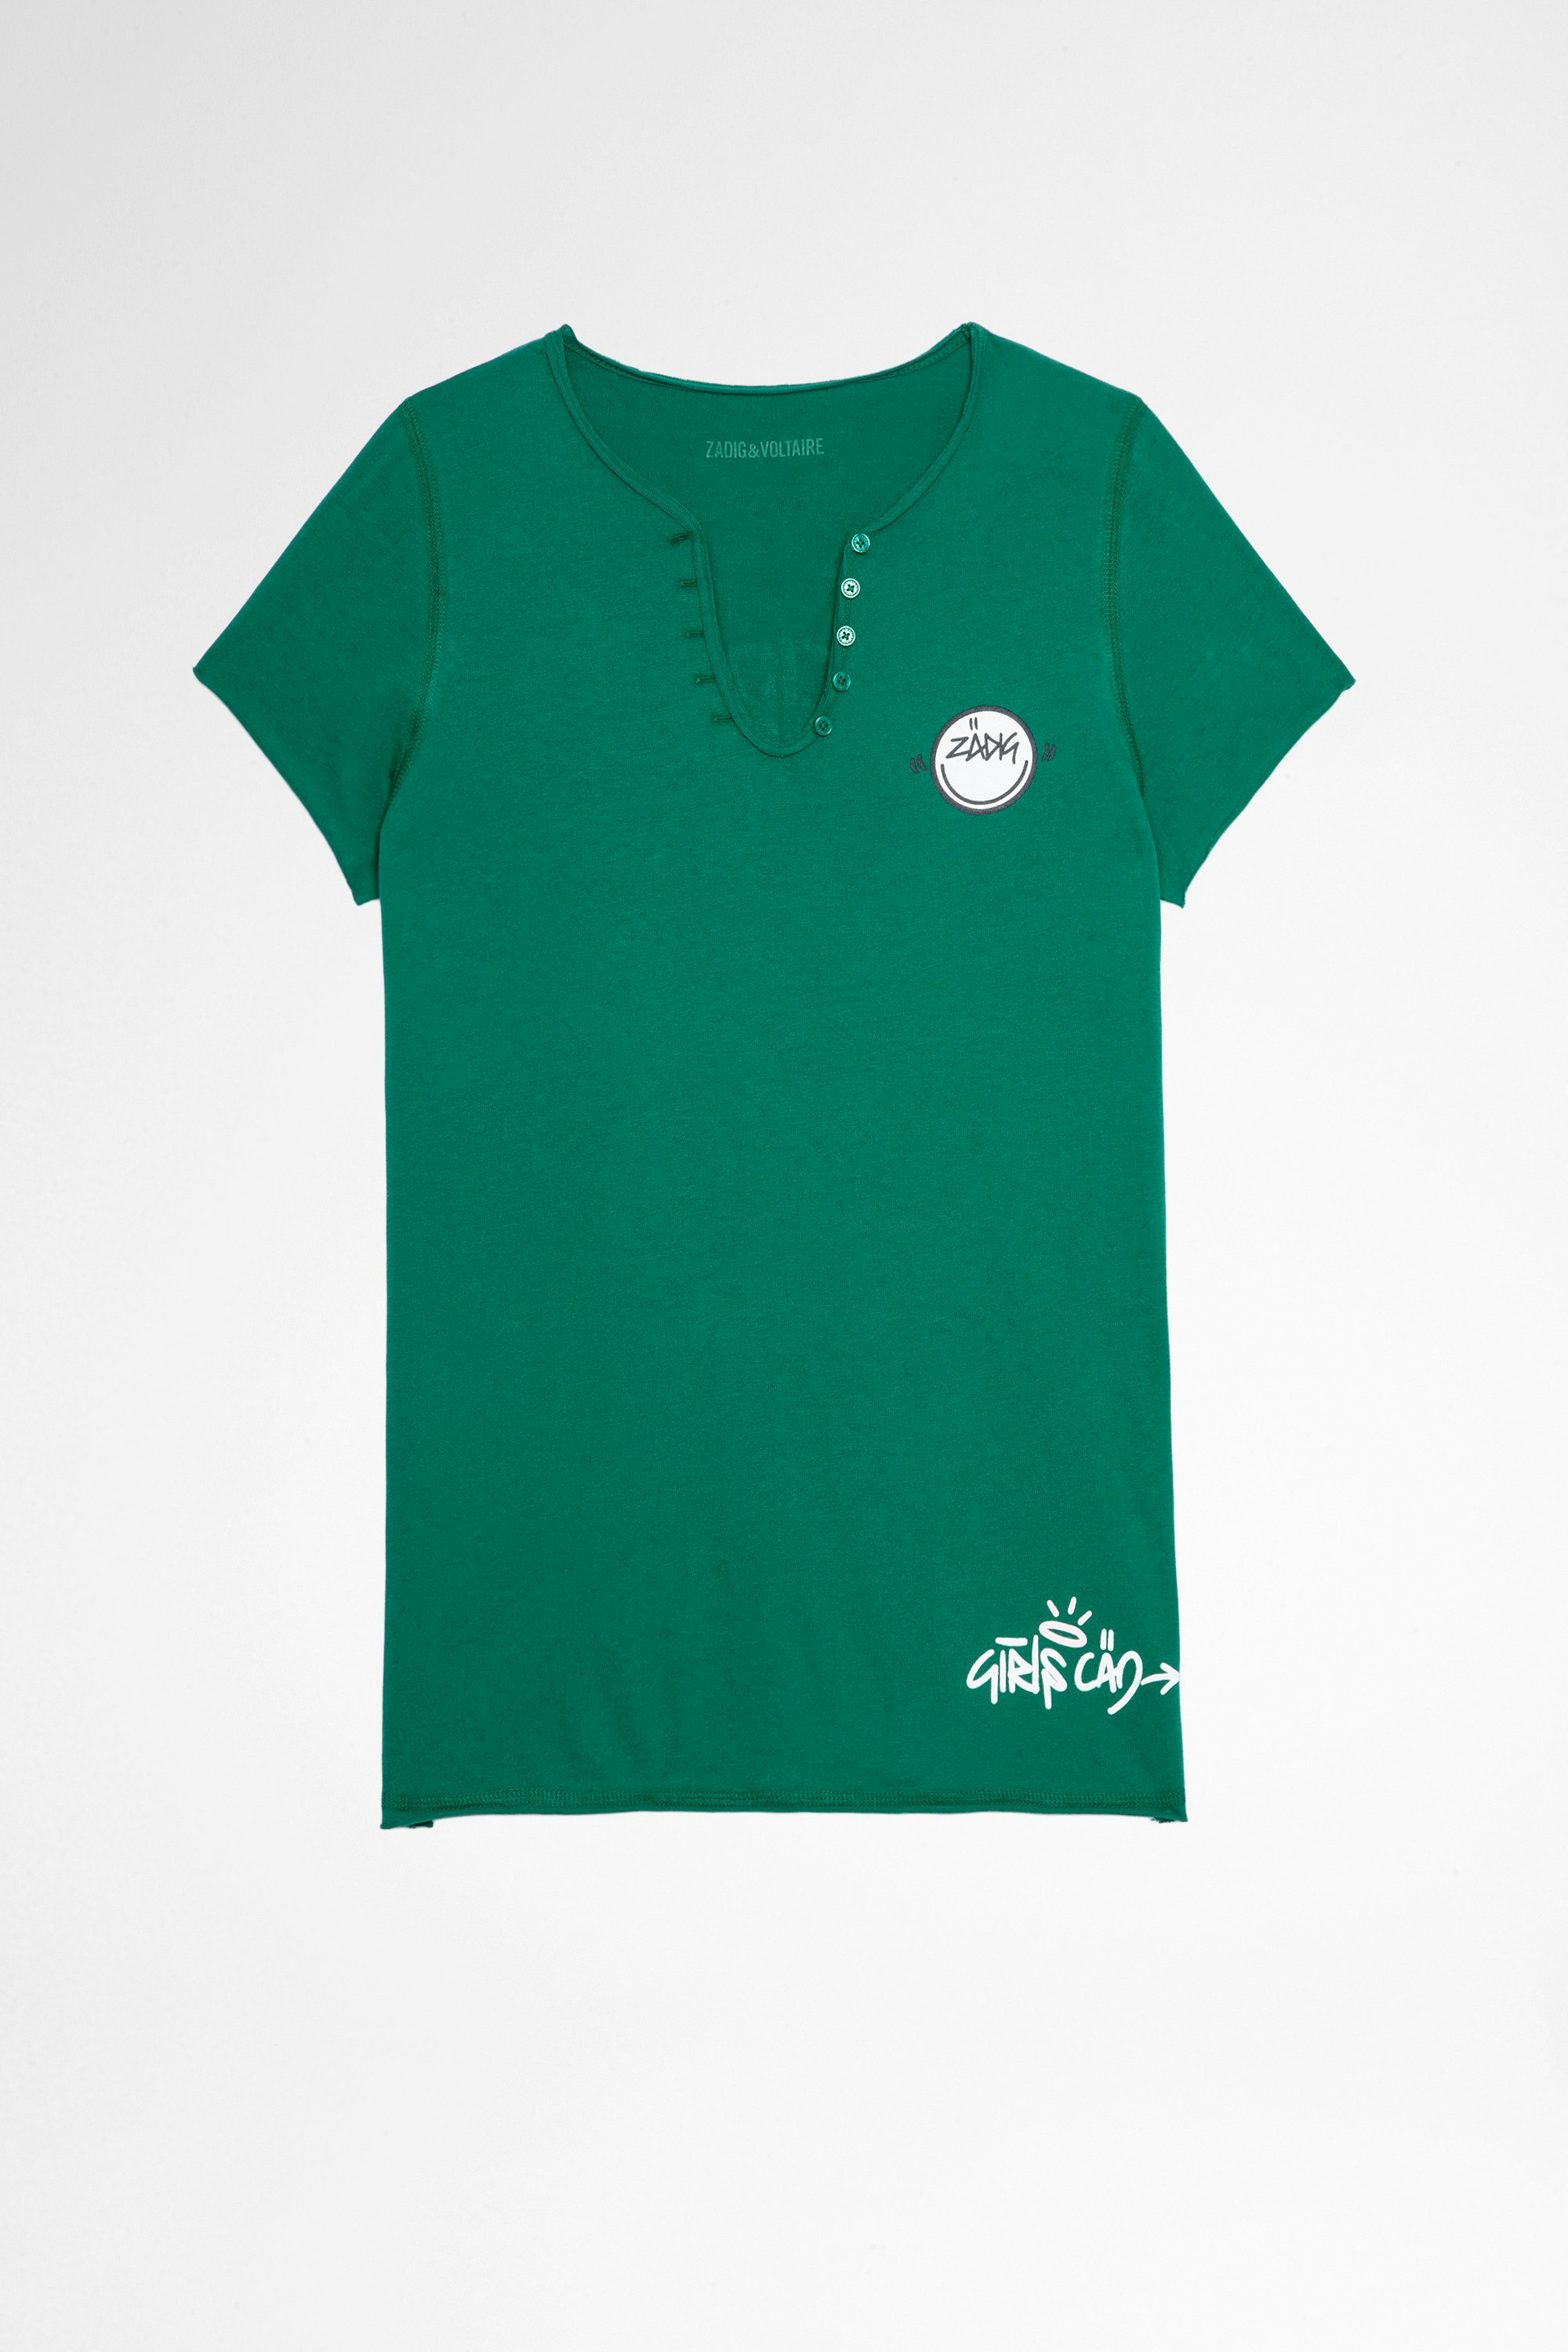 T-shirt tunisien Multicusto T-shirt in cotone verde con collo a serafino con stampa “Girls Can Do Anything”, donna. Questo prodotto é certificato GOTS e realizzato con fibre provenienti da agricoltura biologica